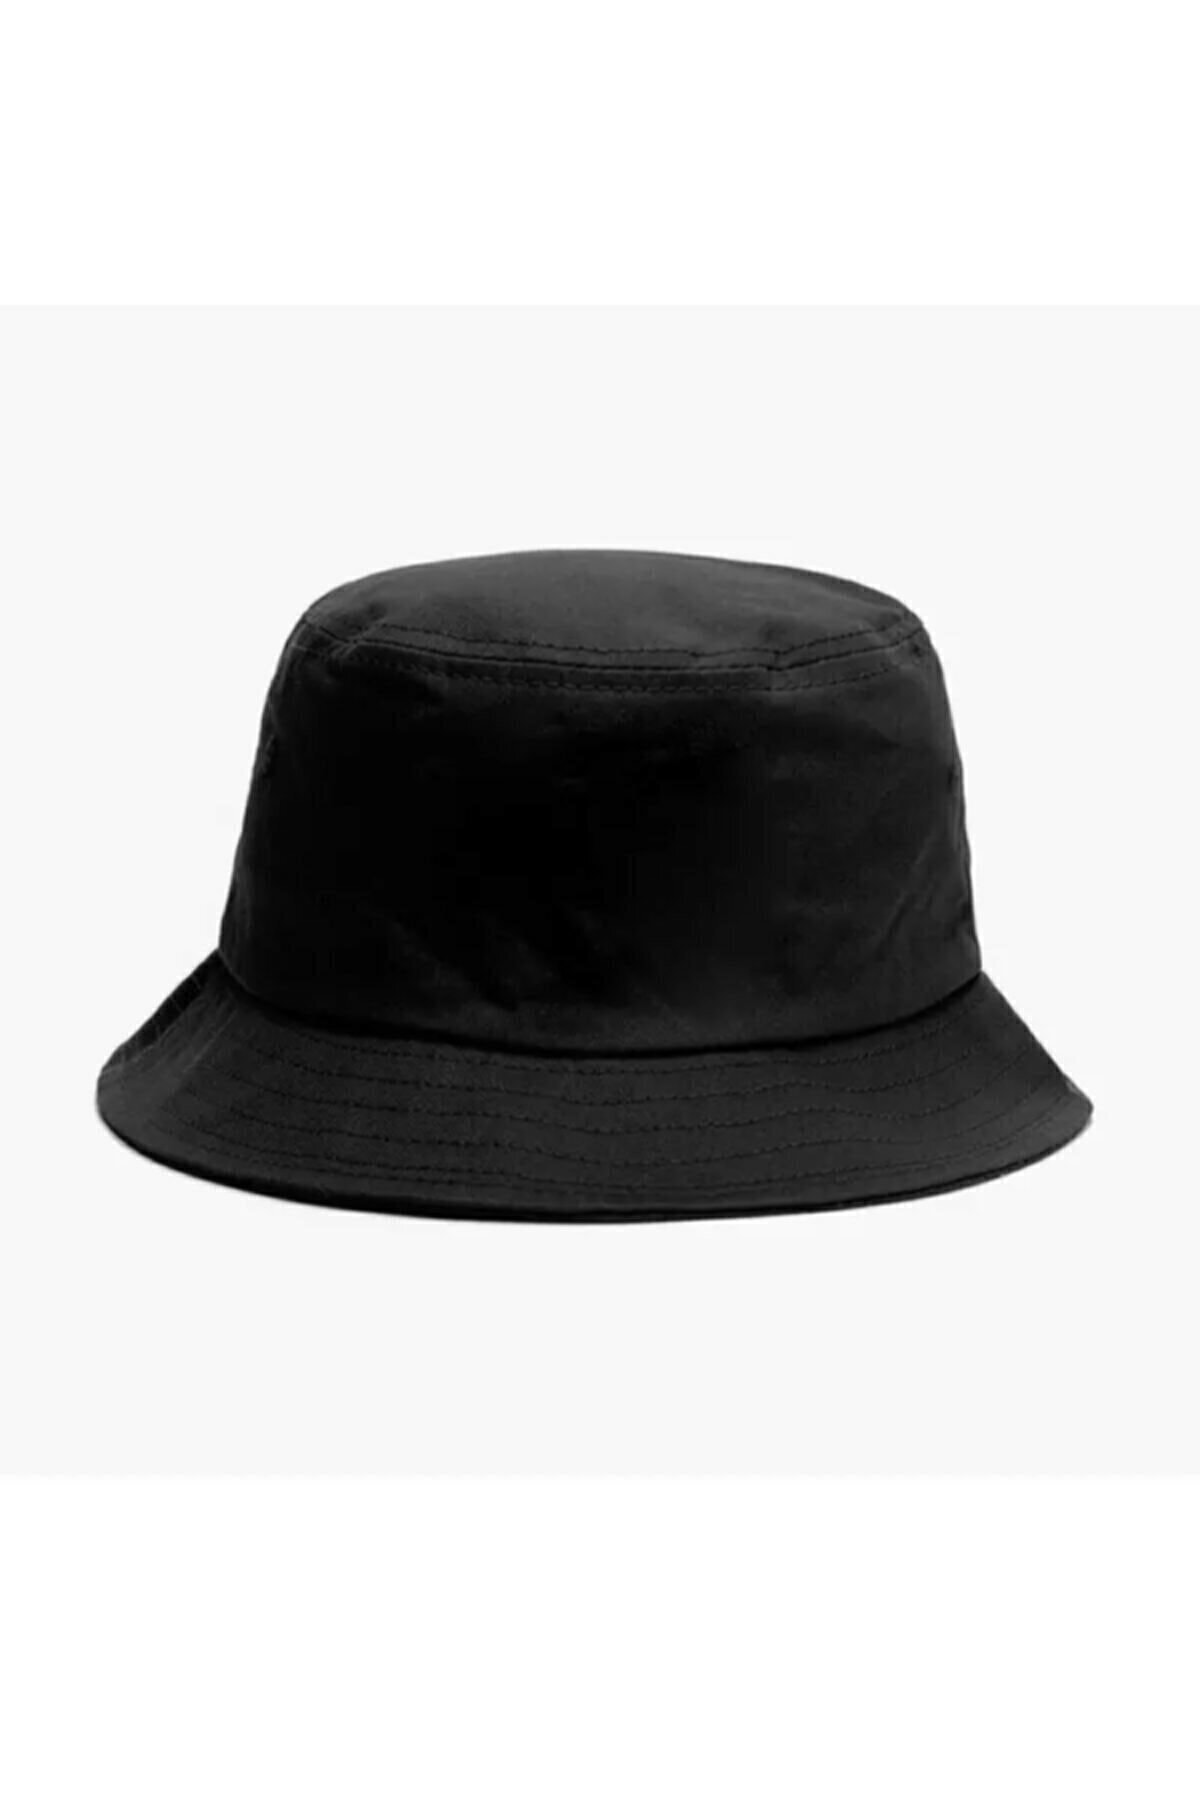 BY SCK Bucket Şapka - Siyah Balıkçı Şapka